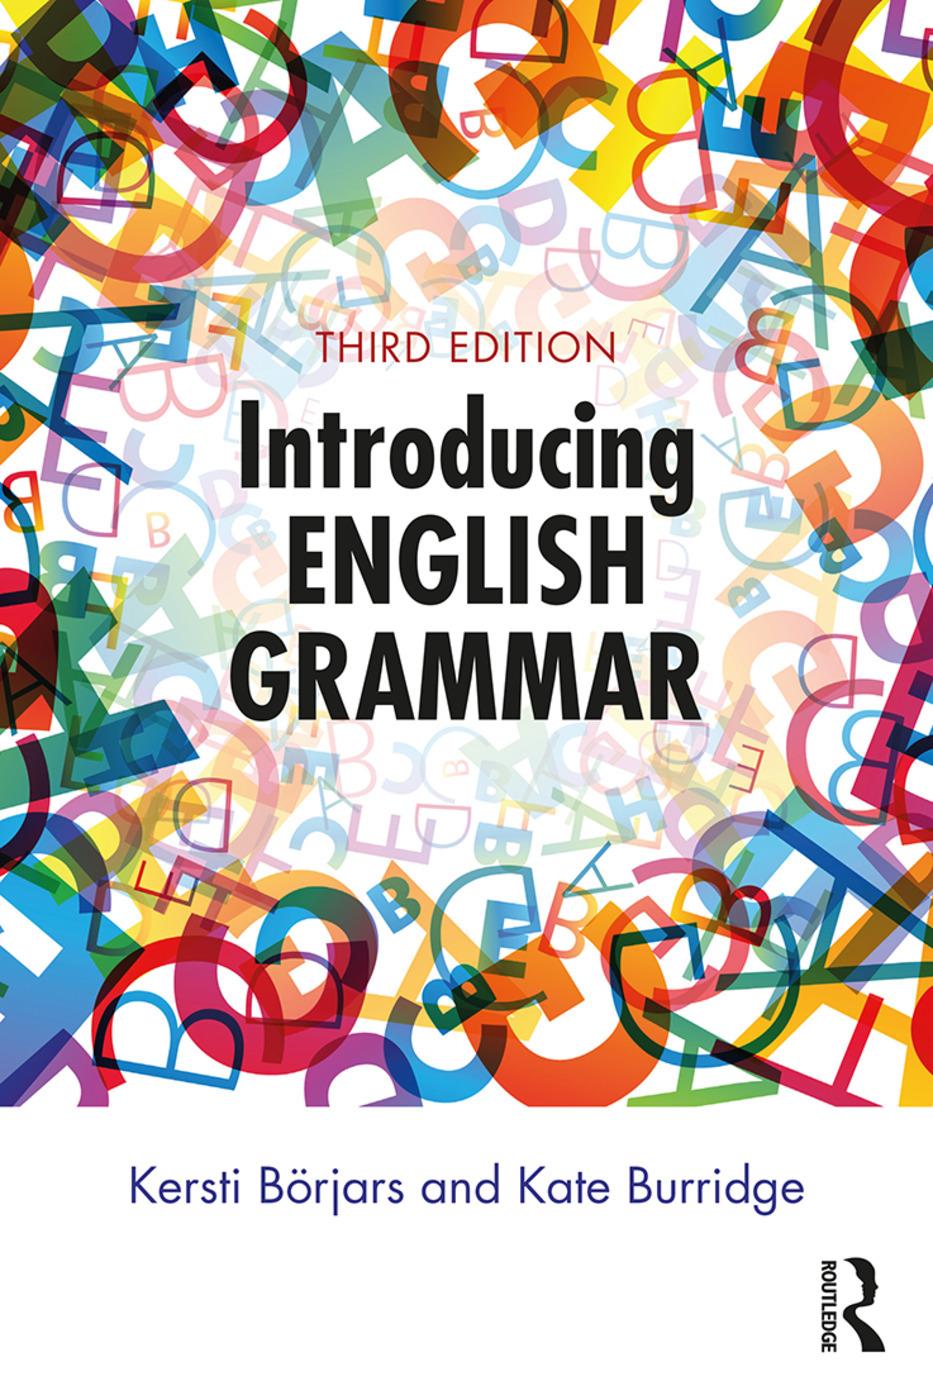 220 Grammar ideas | learn english, english lessons, english grammar